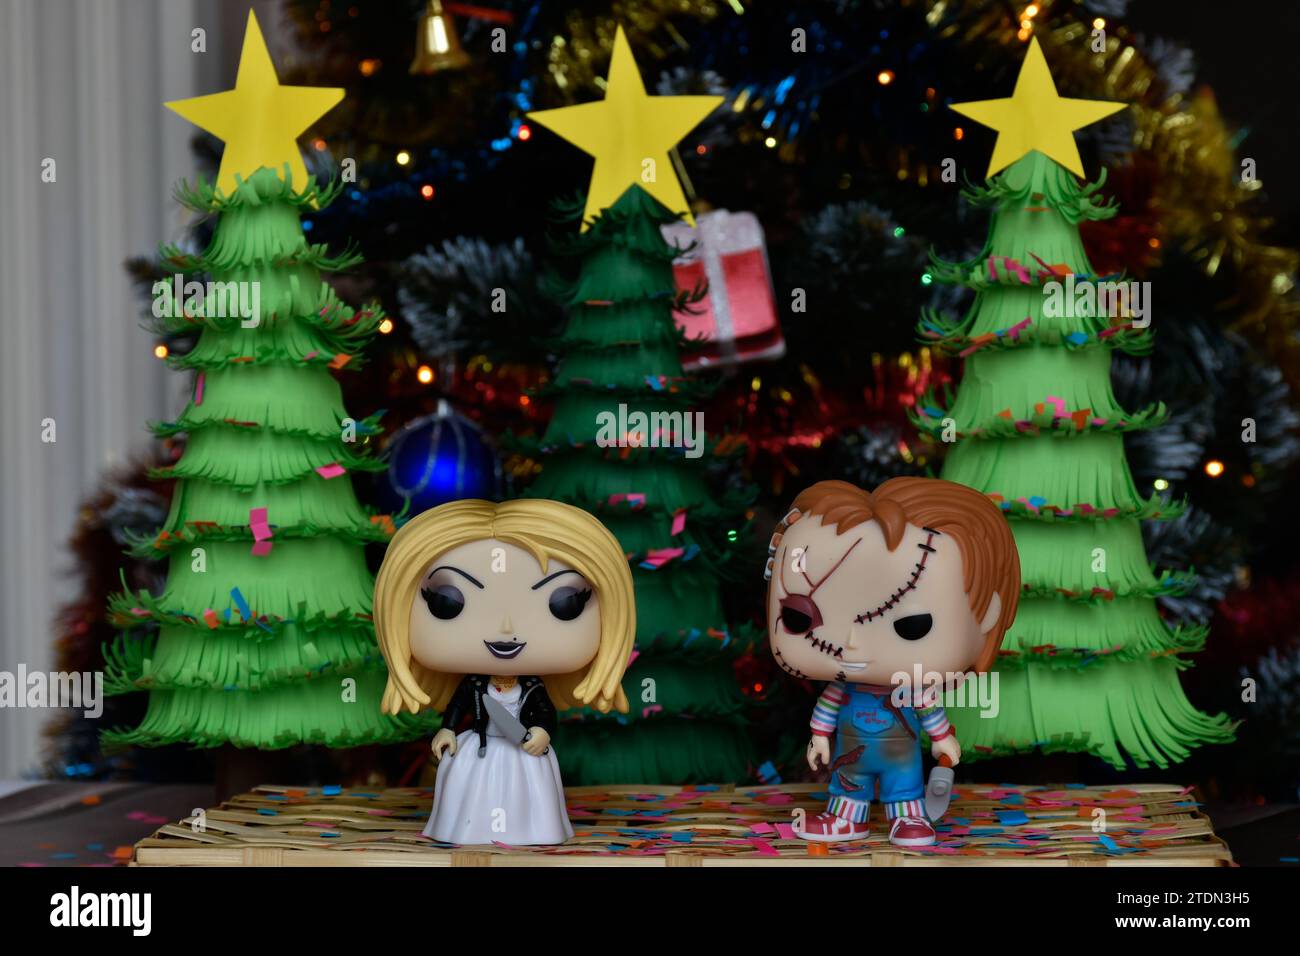 Funko Pop action figure di Chucky e Tiffany sposa di Chucky del franchise horror Child's Play. Alberi di Natale in carta fatti a mano, decorazioni natalizie. Foto Stock